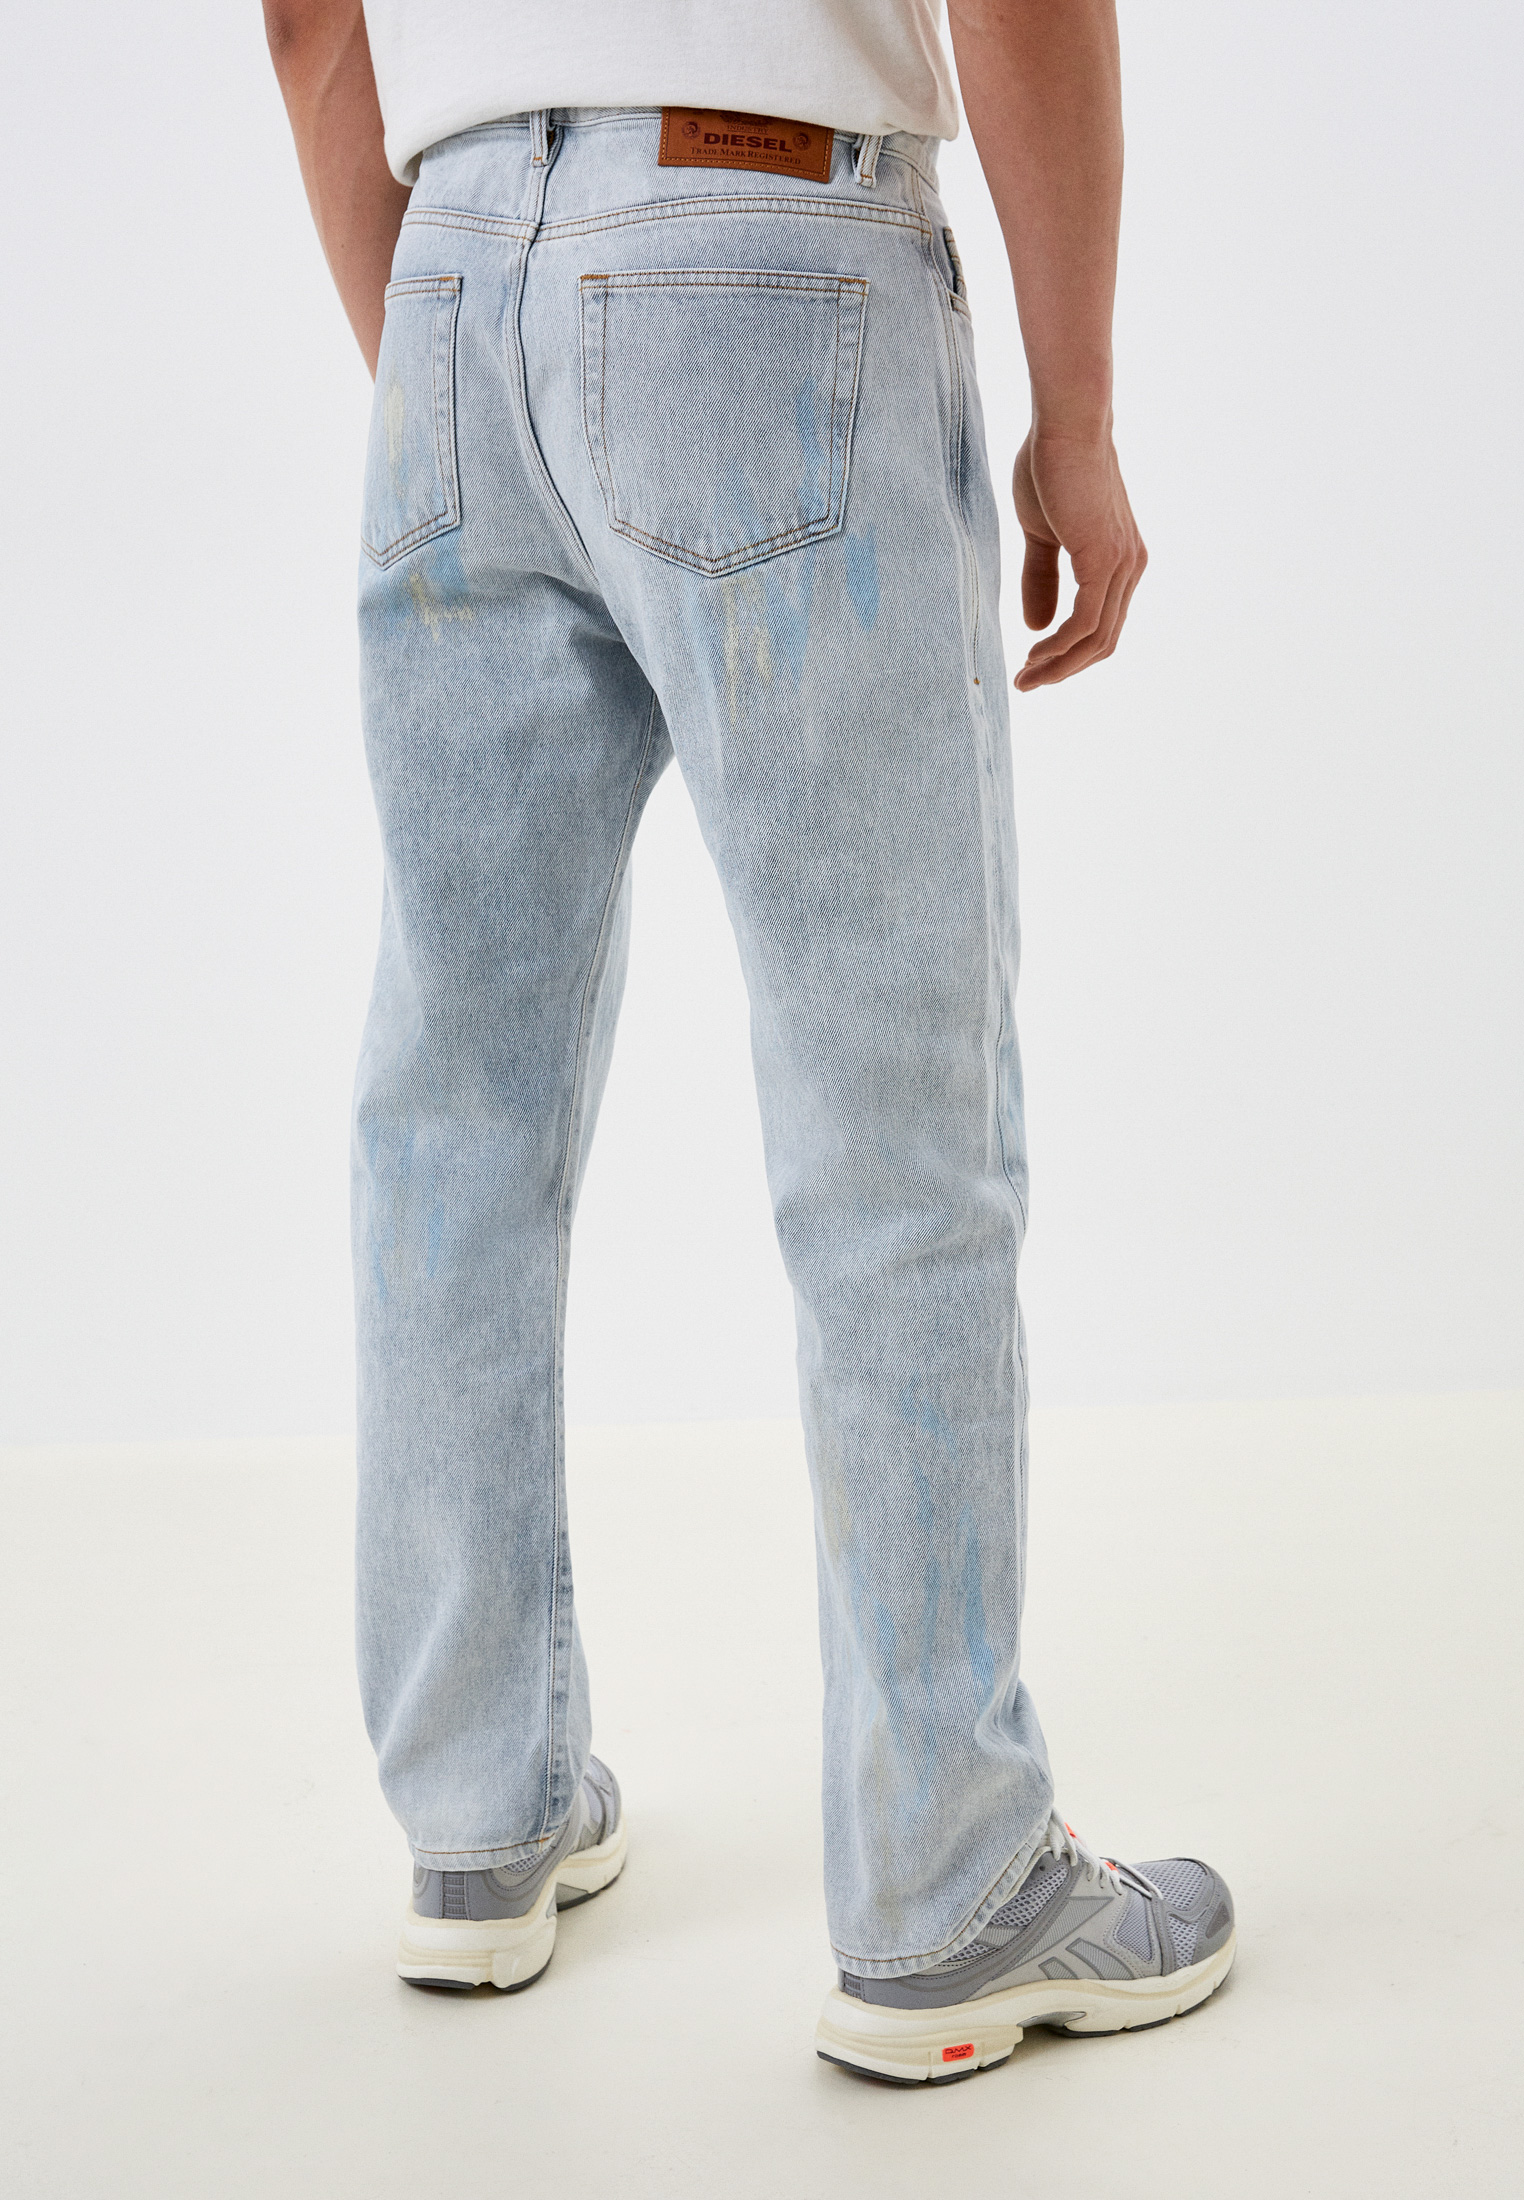 Мужские прямые джинсы Diesel (Дизель) A05156007B2: изображение 3